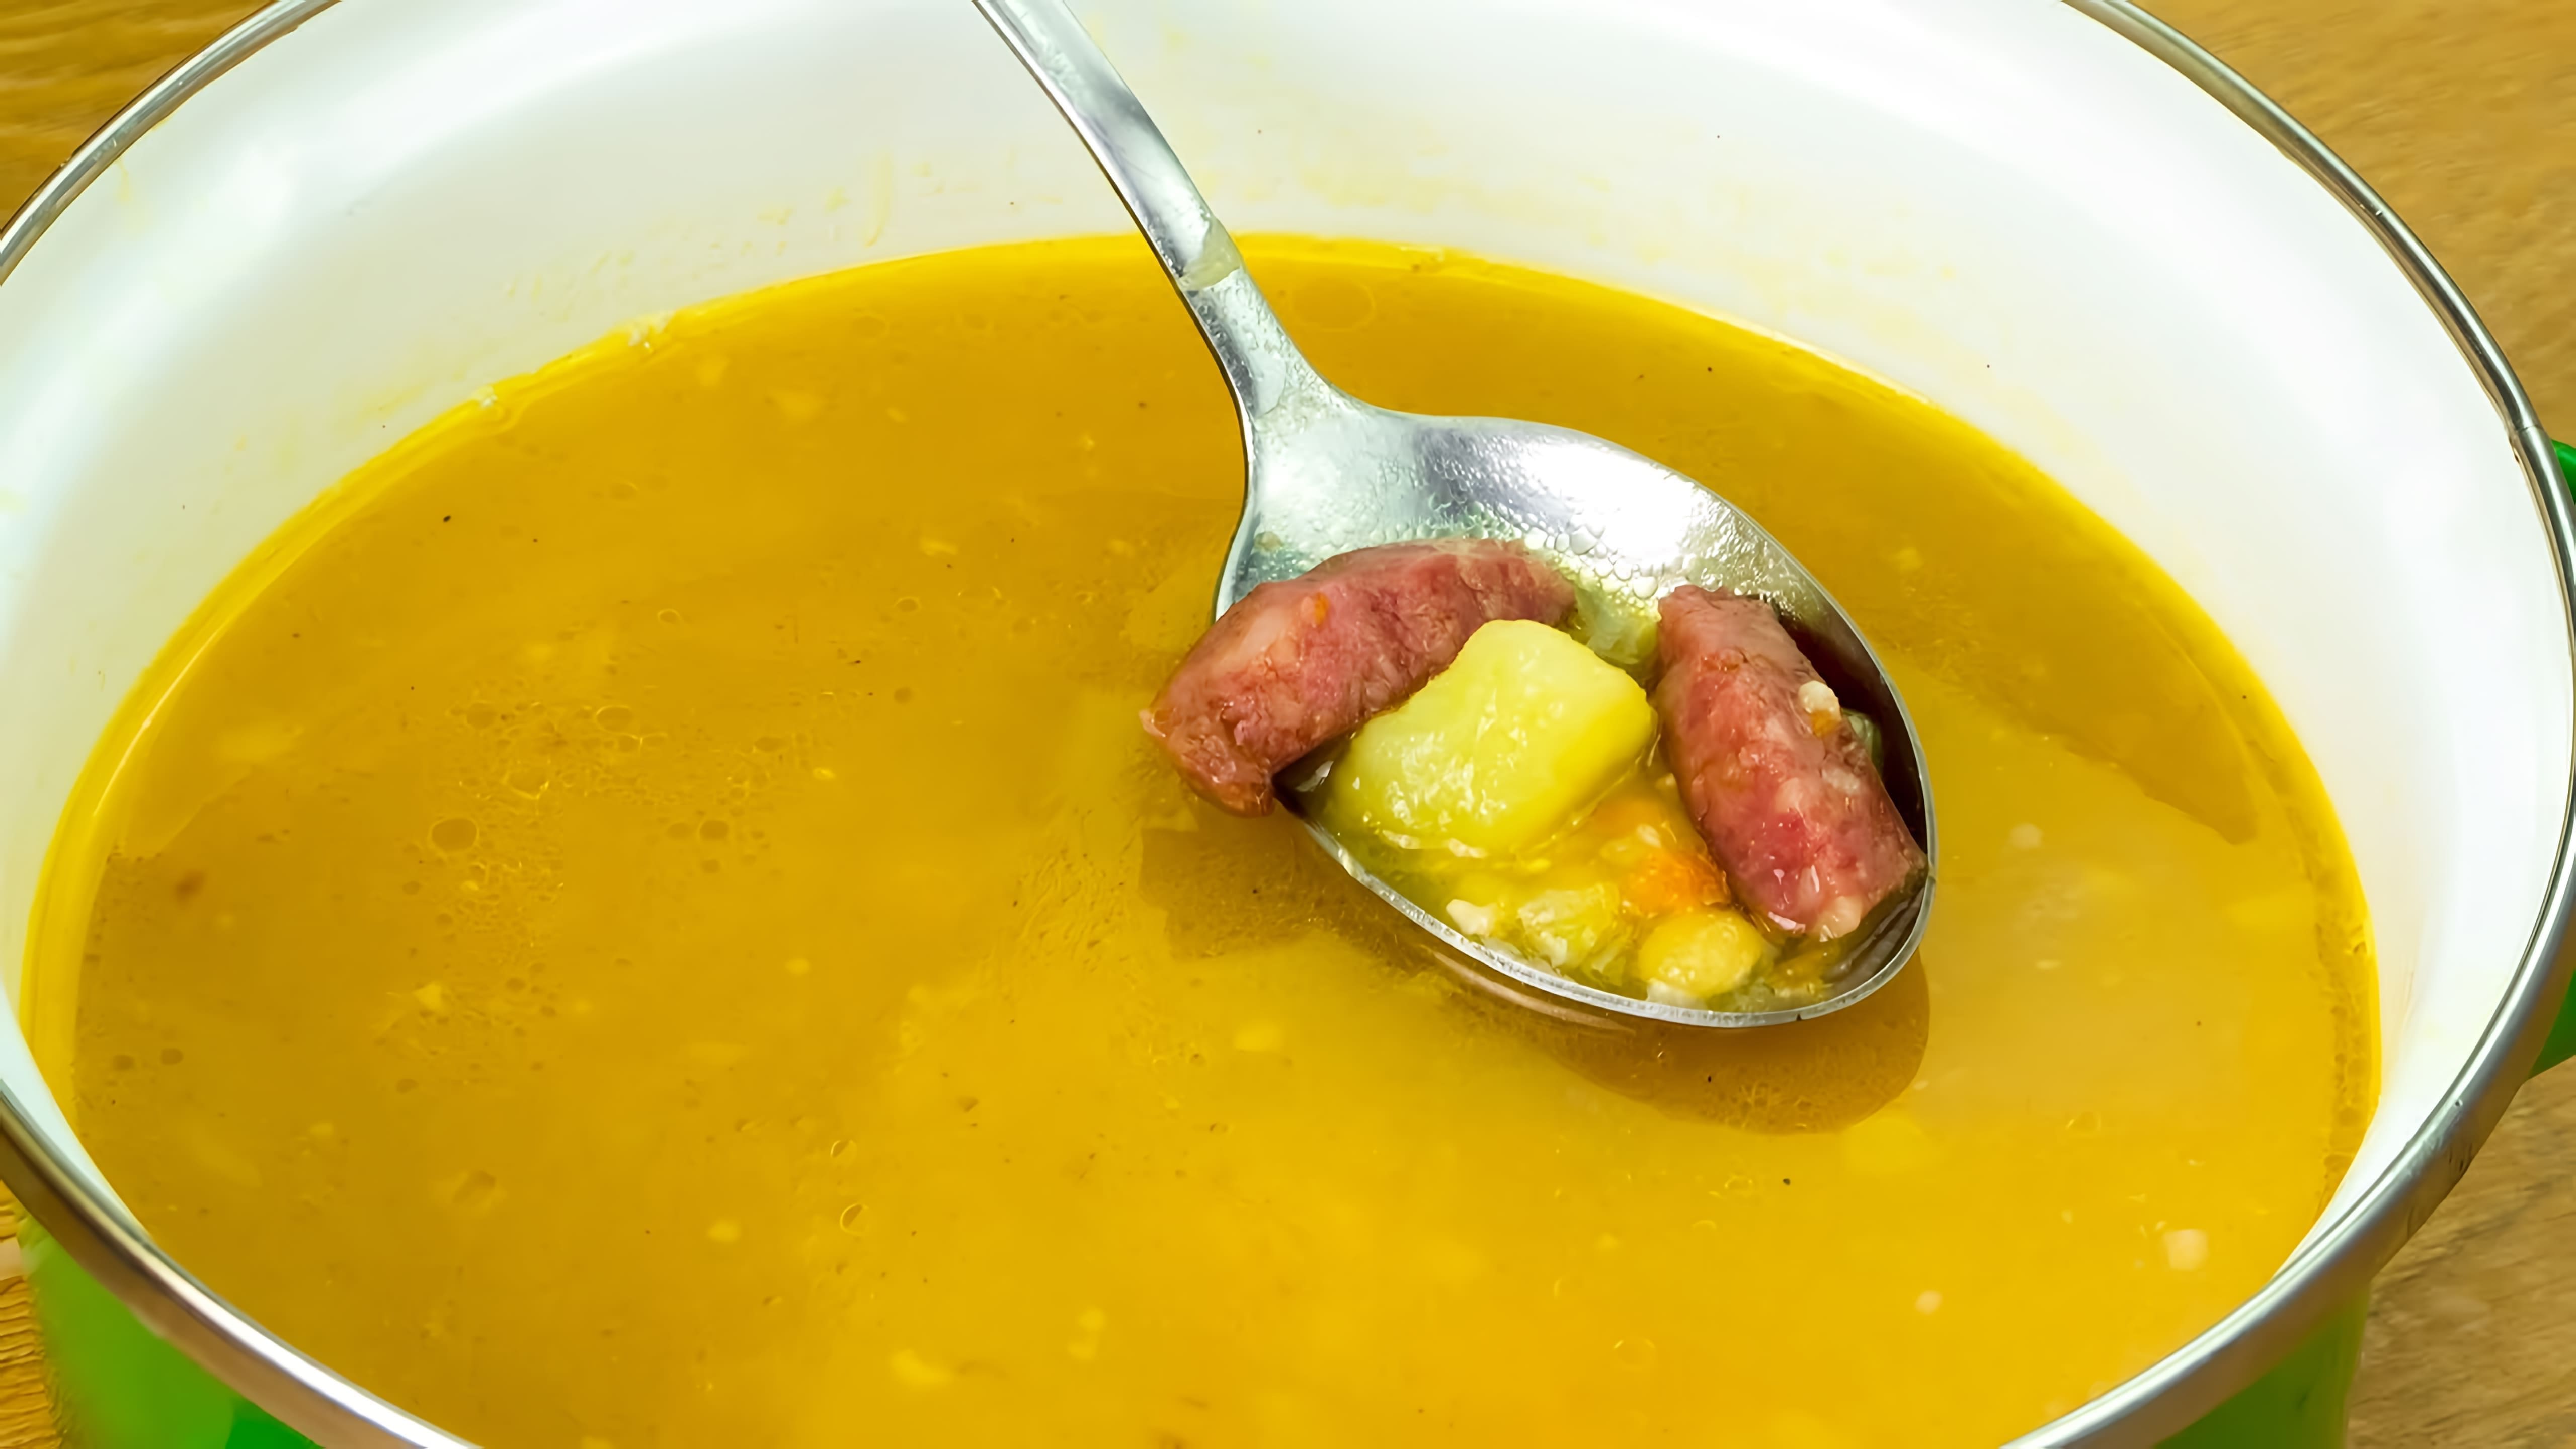 "Вкусный гороховый суп с охотничьими колбасками - еще захочется!" - так называется видео-ролик, который я хочу вам предложить